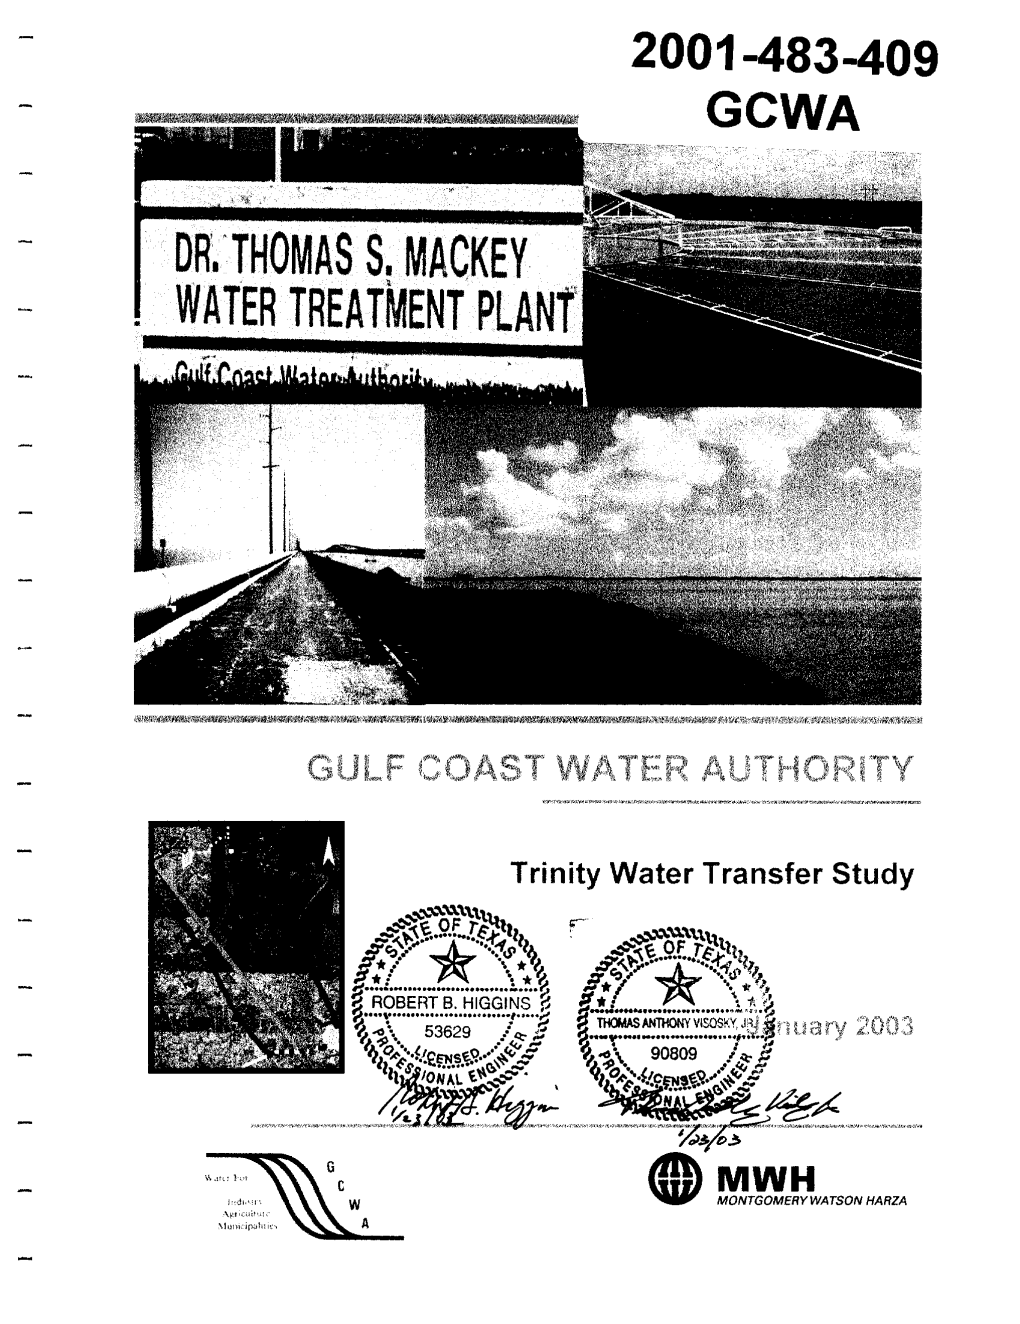 THOMAS S. MACKEY WATER TREATMENT Planf